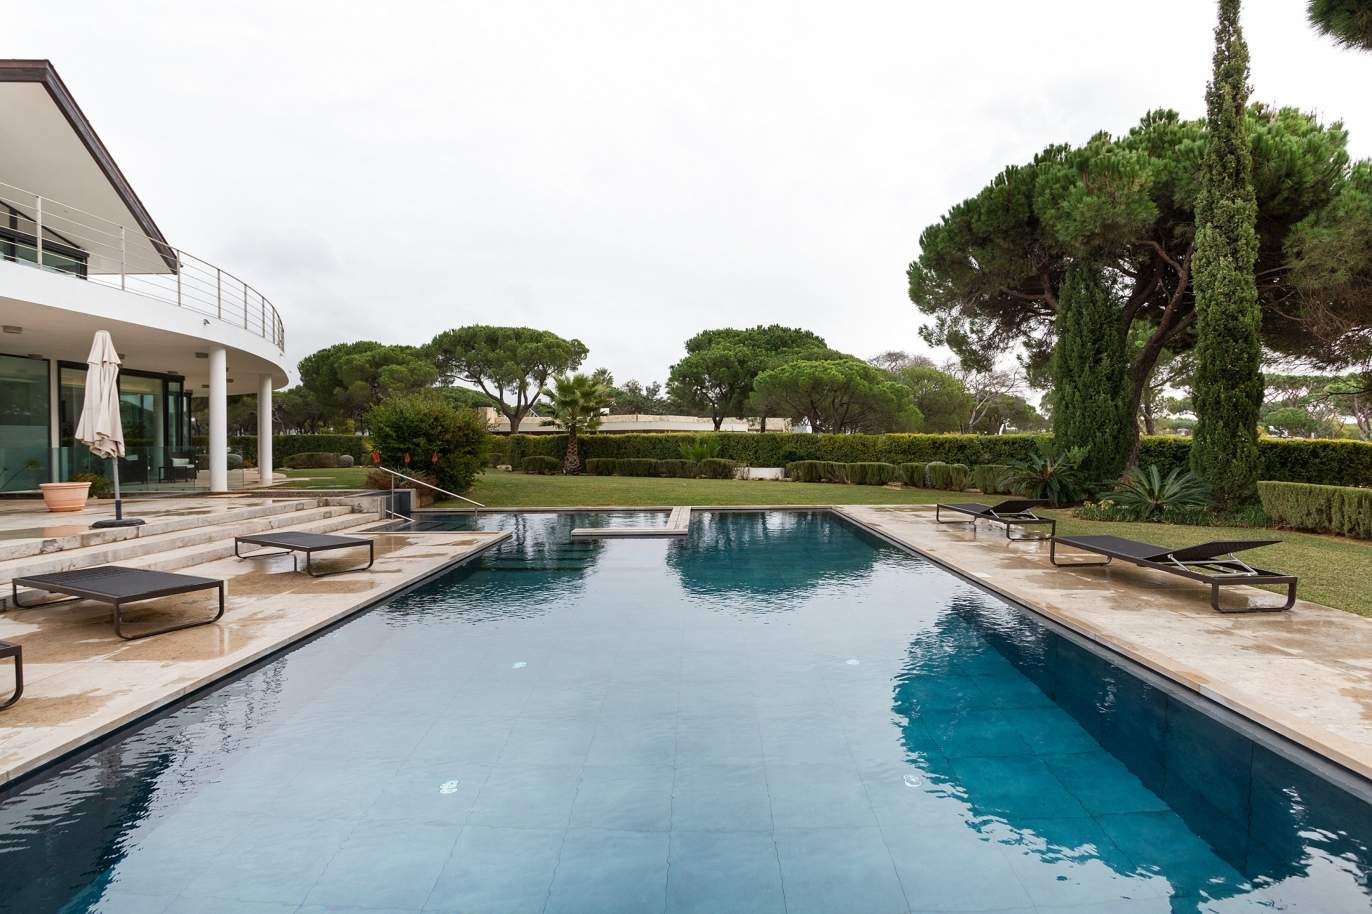 6 Bedroom Villa, with swimming pool, in Vilamoura, for sale - Algarve_188776